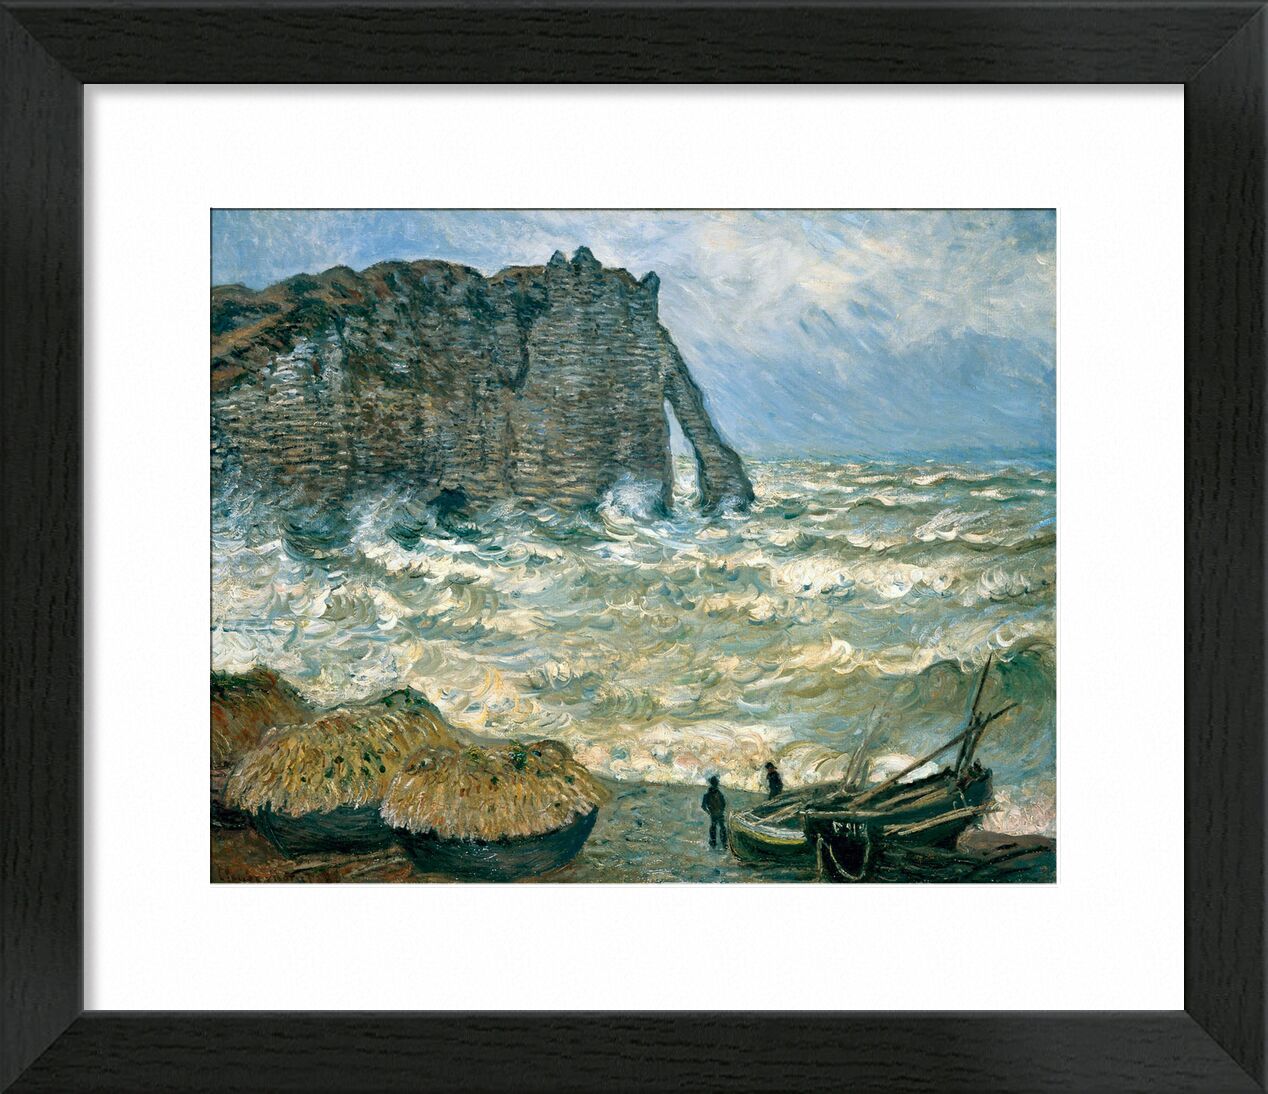 Stormy Sea in Étretat - CLAUDE MONET 1883 desde Bellas artes, Prodi Art, mar agitado, CLAUDE MONET, nubes, cielo, marina, barco, acantilado, pintura, tormenta, mar